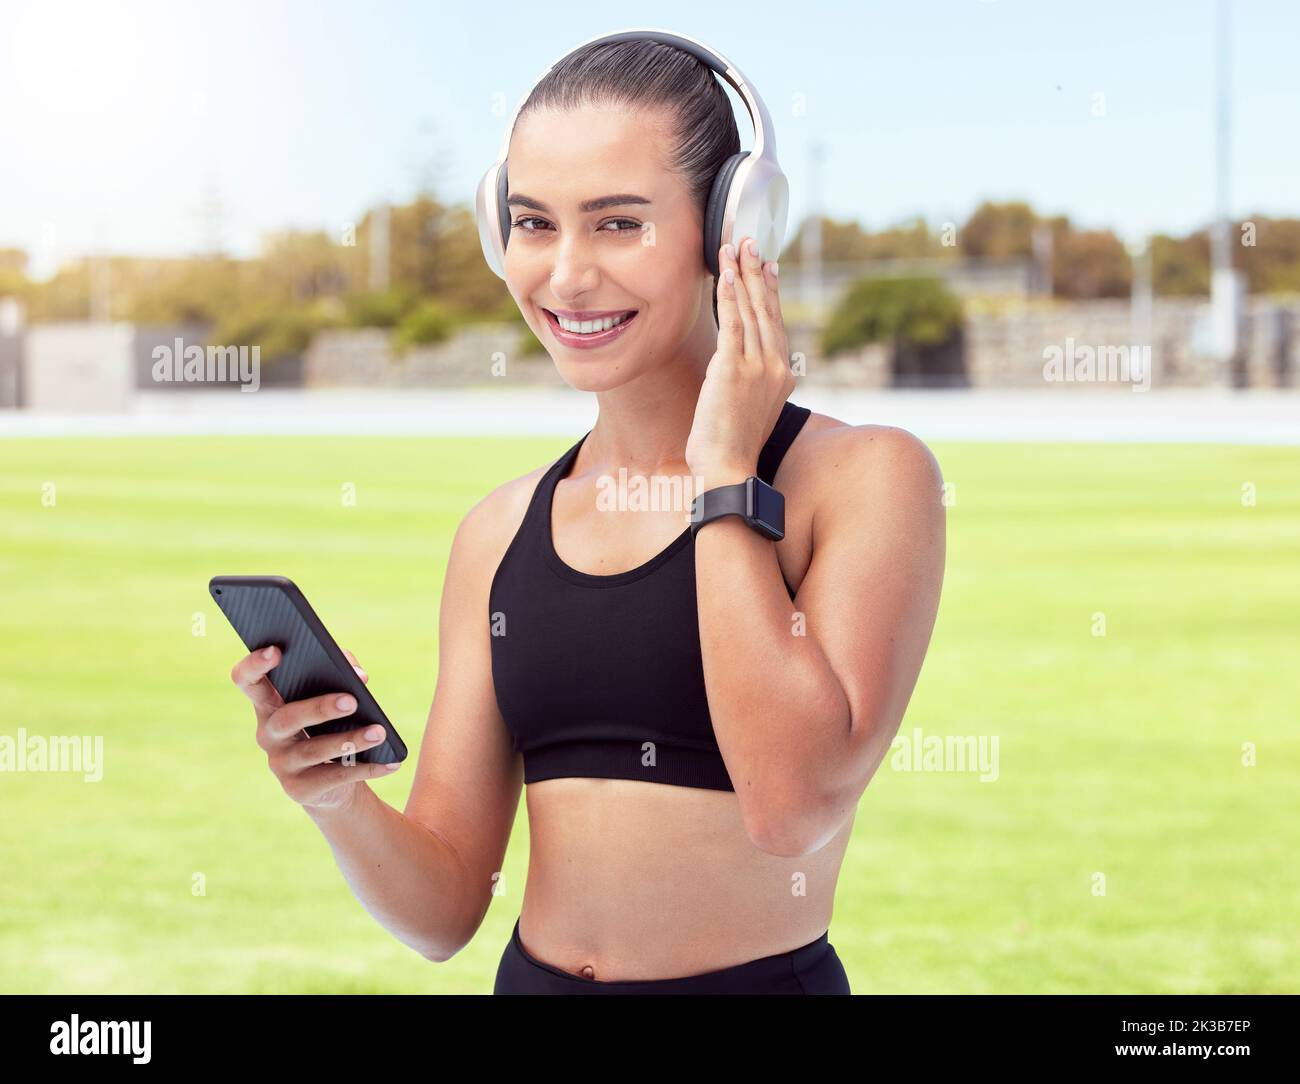 Frau Fitness-Runnerin hört Musik, 5G Telefon für Motivation, Wellness oder Training Outdoor-Sport oder Veranstaltung. Mädchen Sport Athlet Workout, Laufen Stockfoto